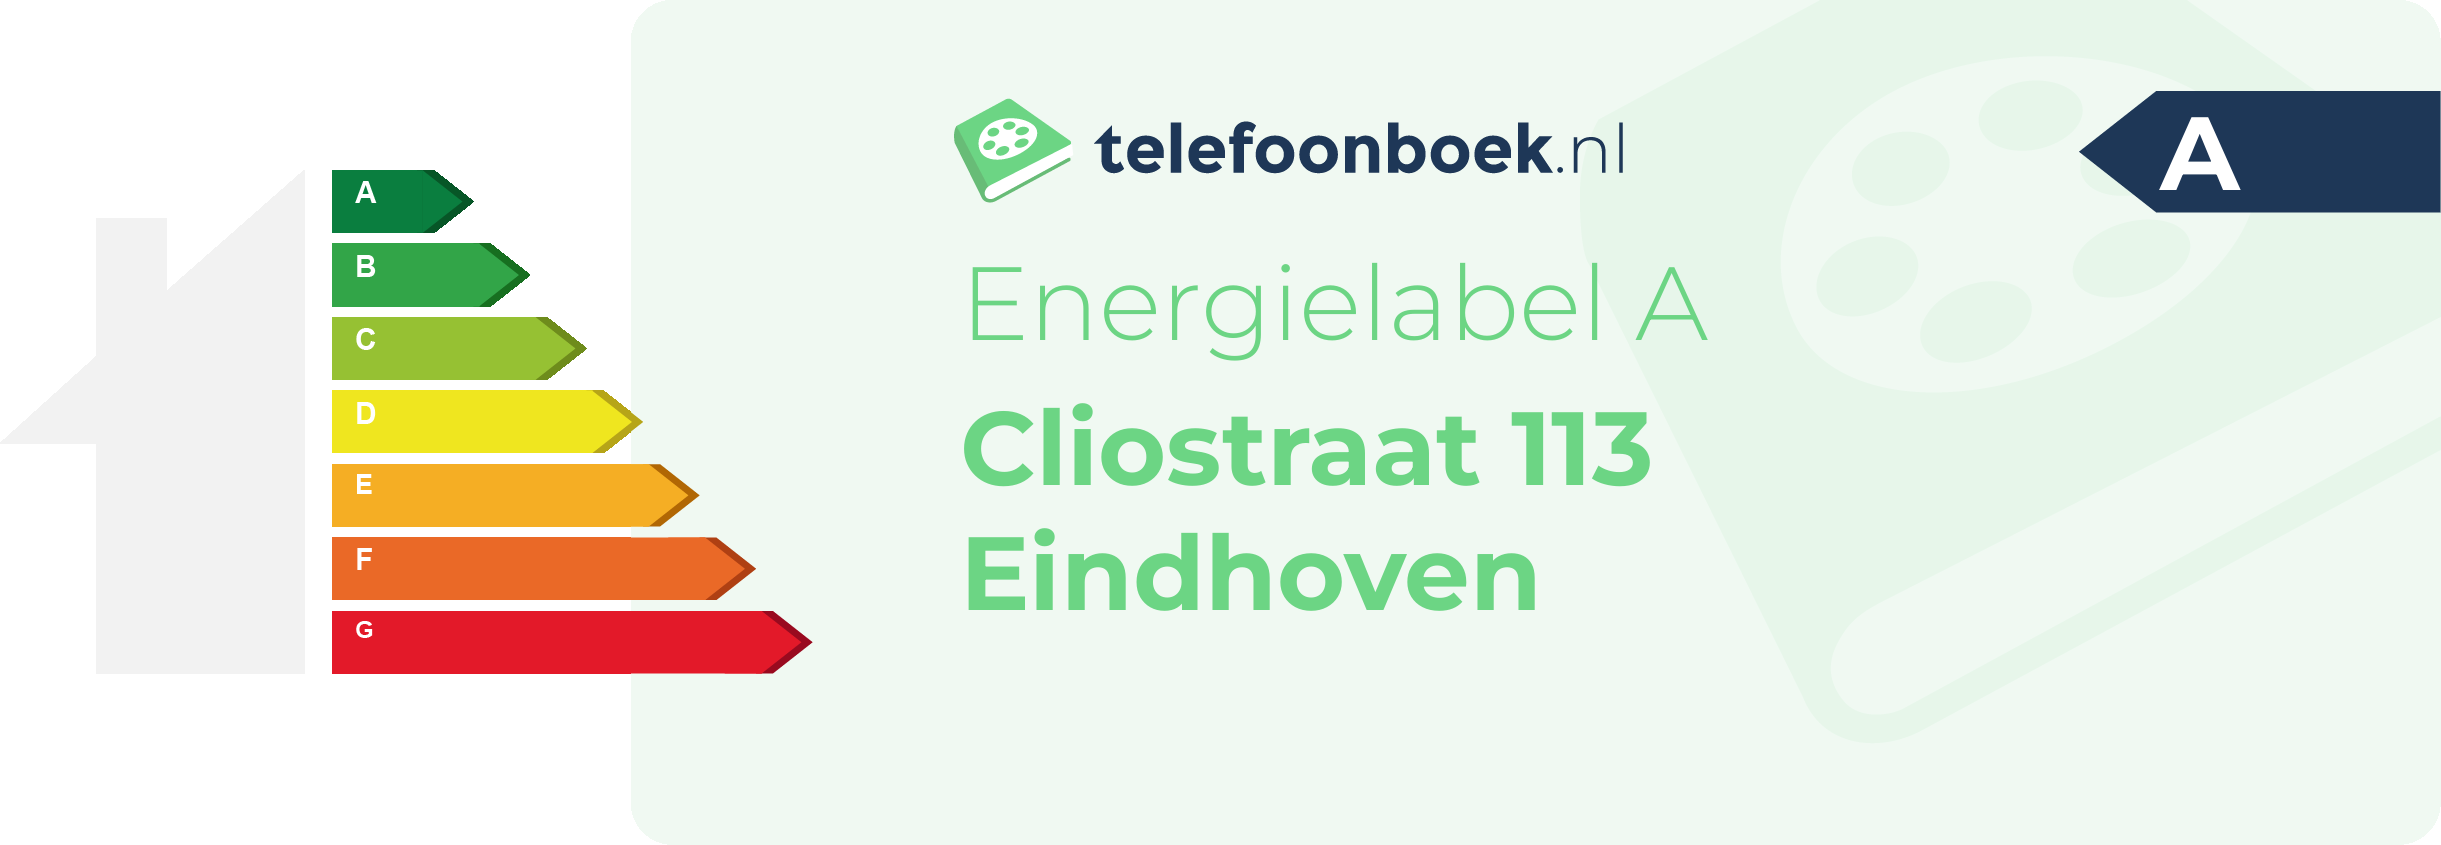 Energielabel Cliostraat 113 Eindhoven